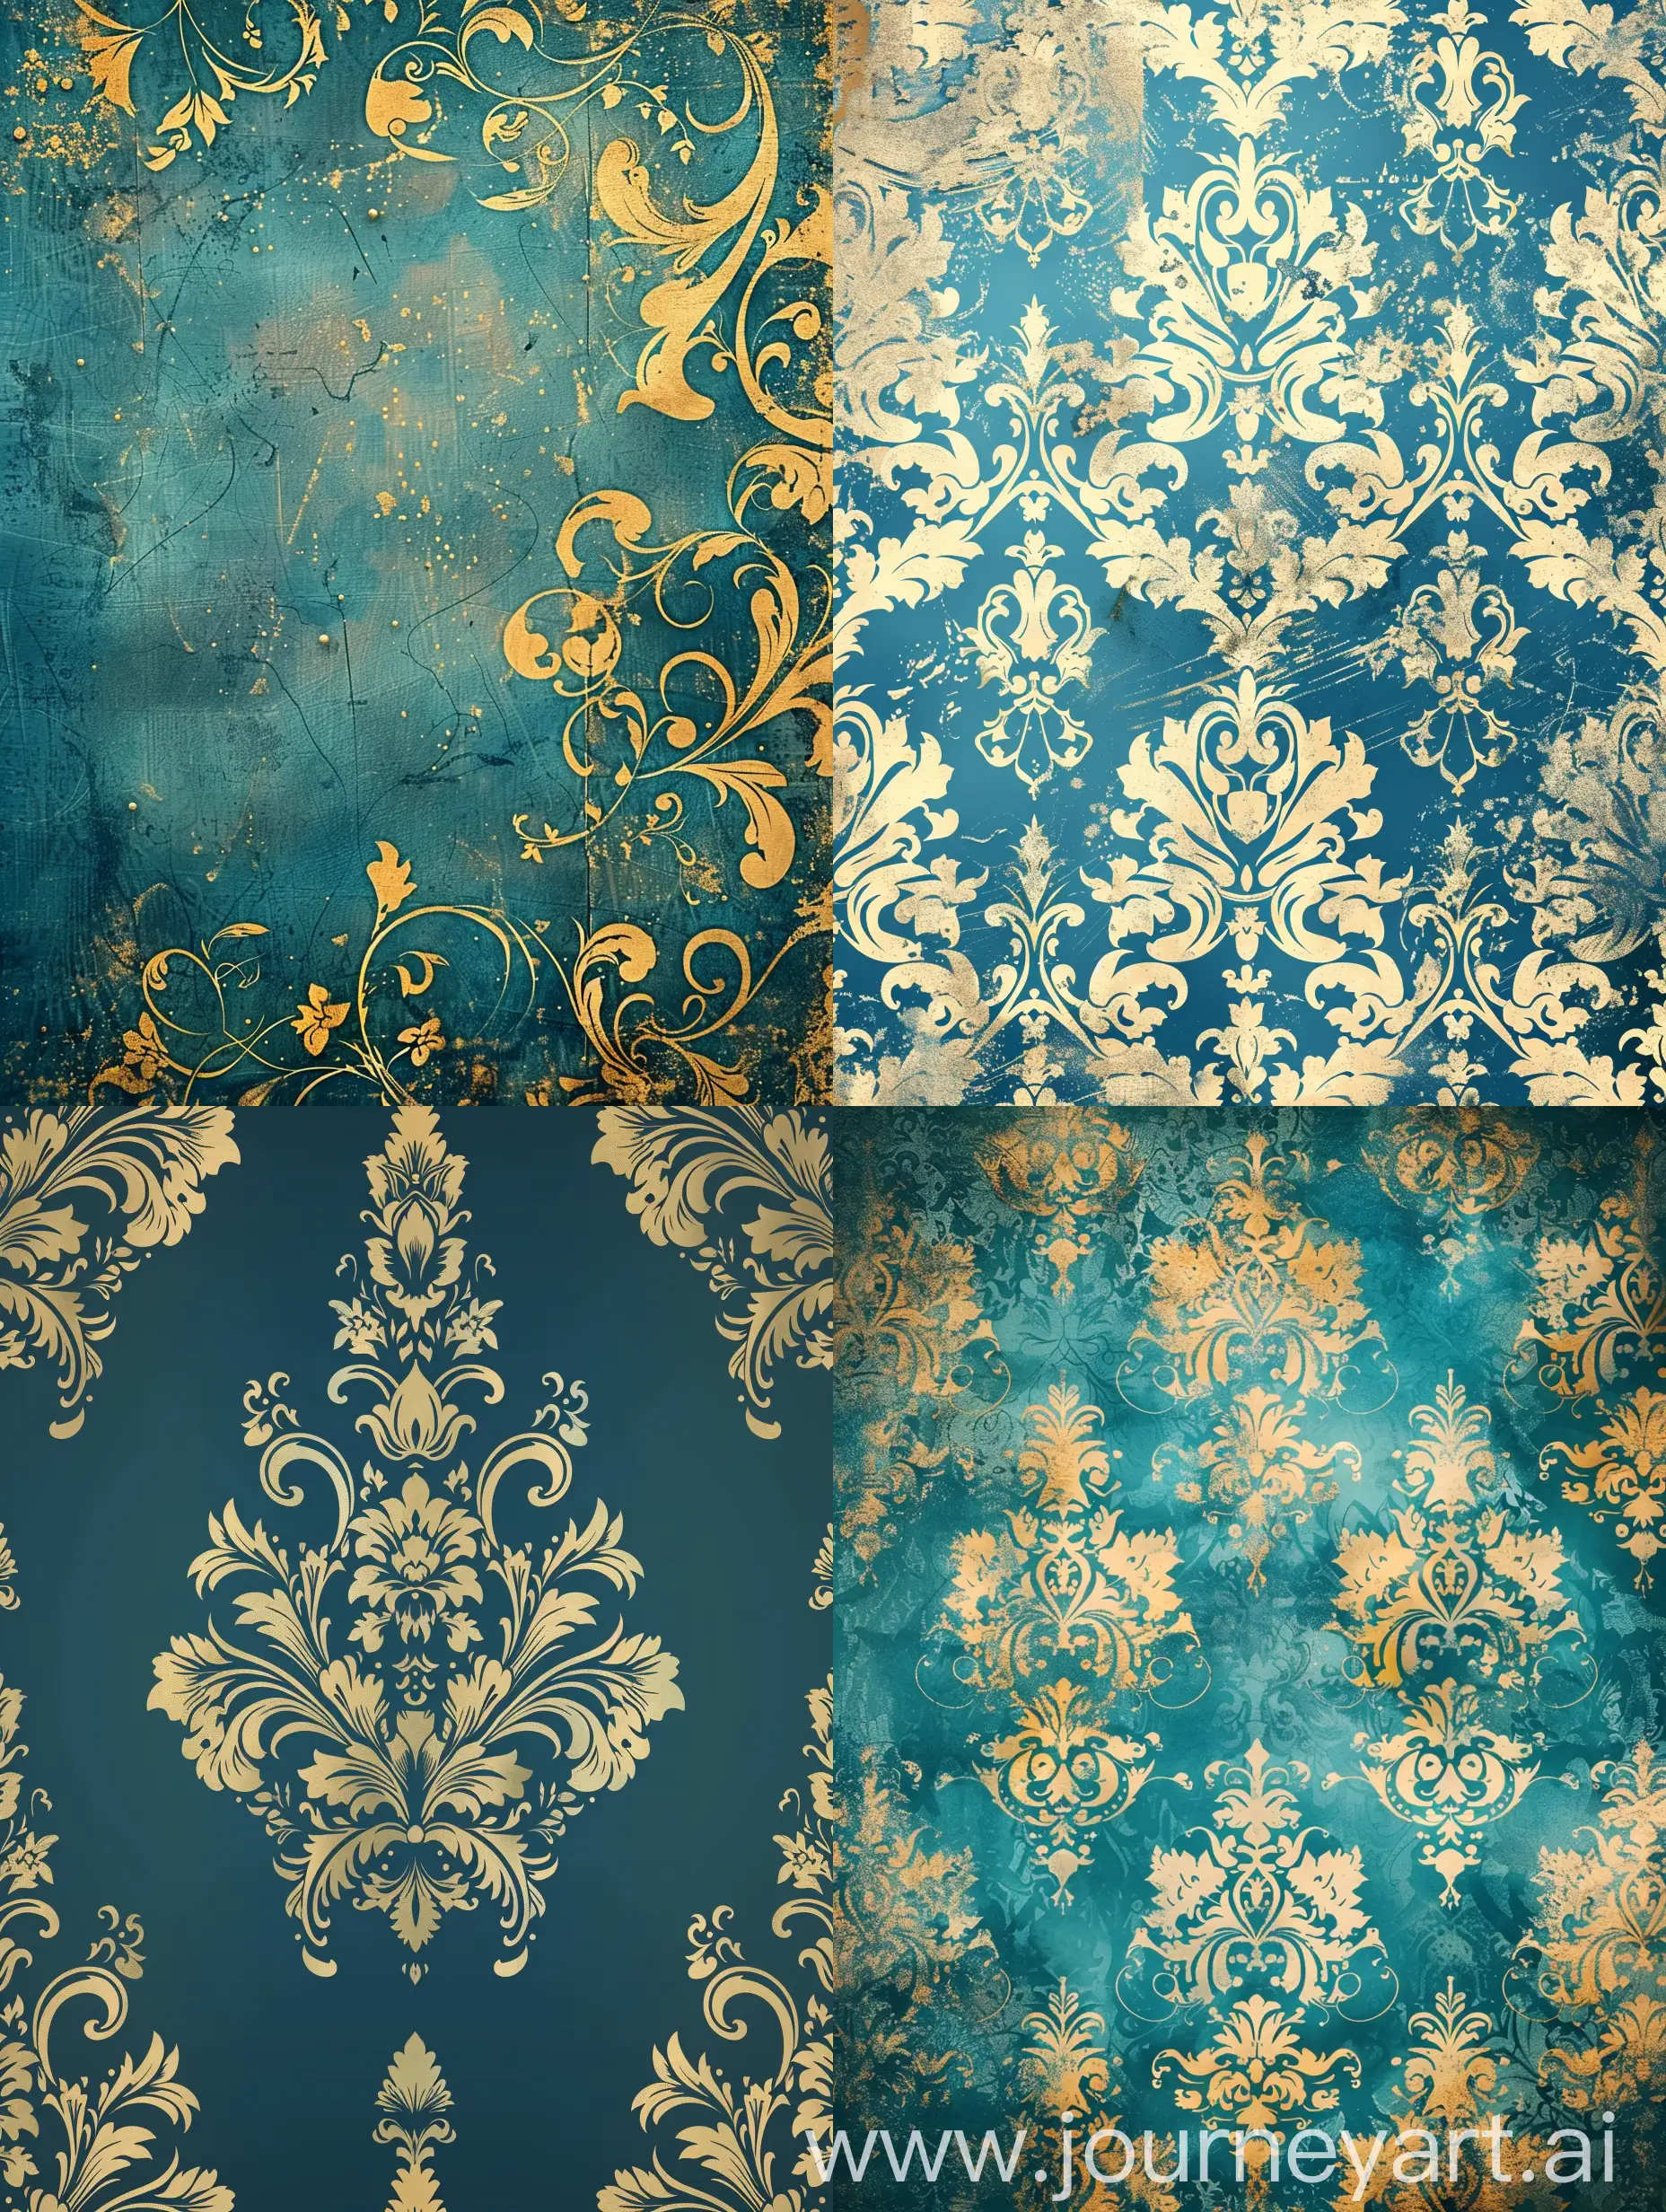 Elegant-Fantasy-Damask-Vintage-Blue-and-Gold-Background